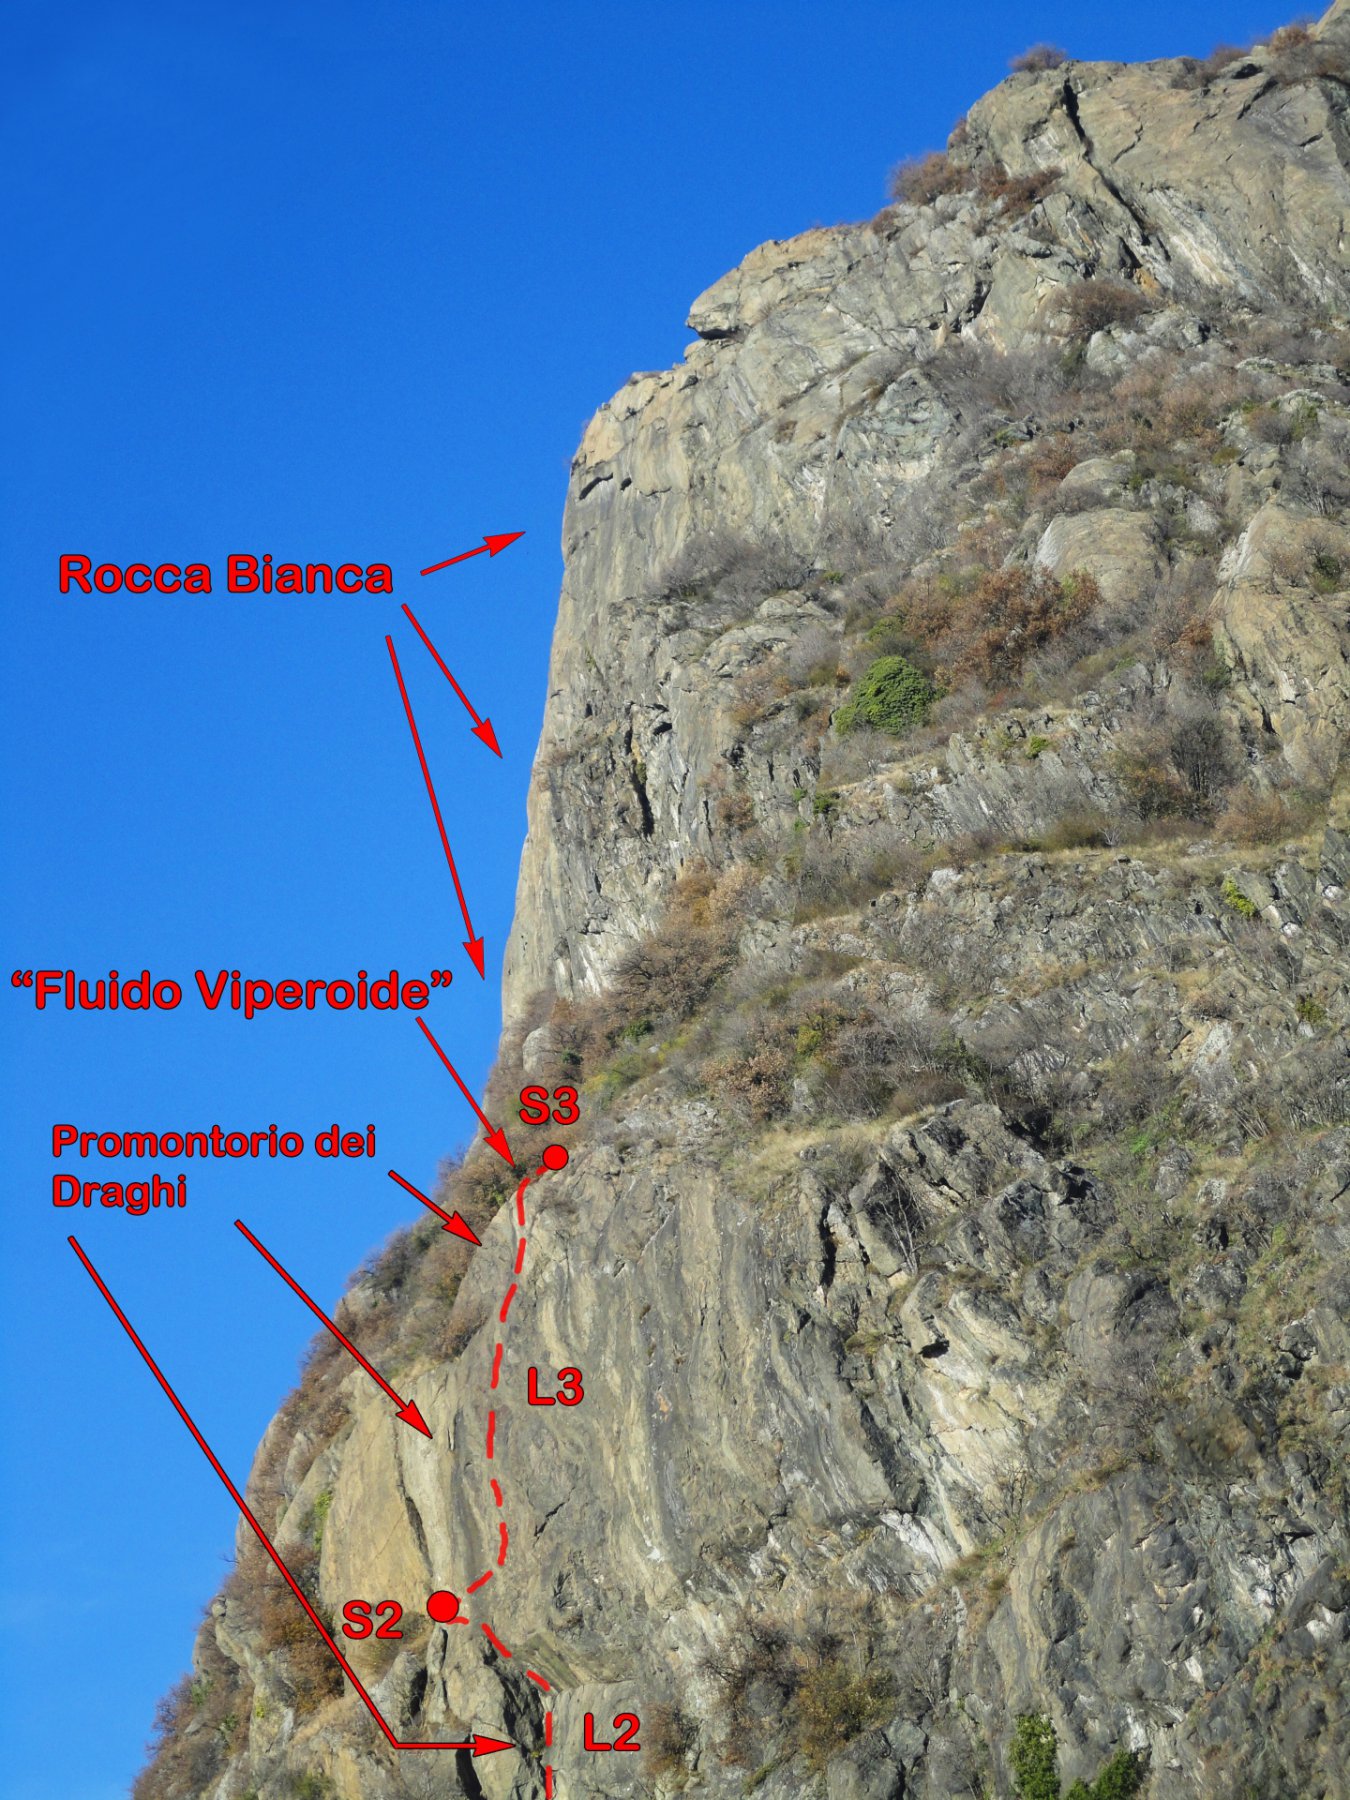 Tracciato della via rispetto alle strutture principali di Caprie.. la foto inquadra la parete poco sopra S1 di Fluido Viperoide (non visibile per pochi metri).